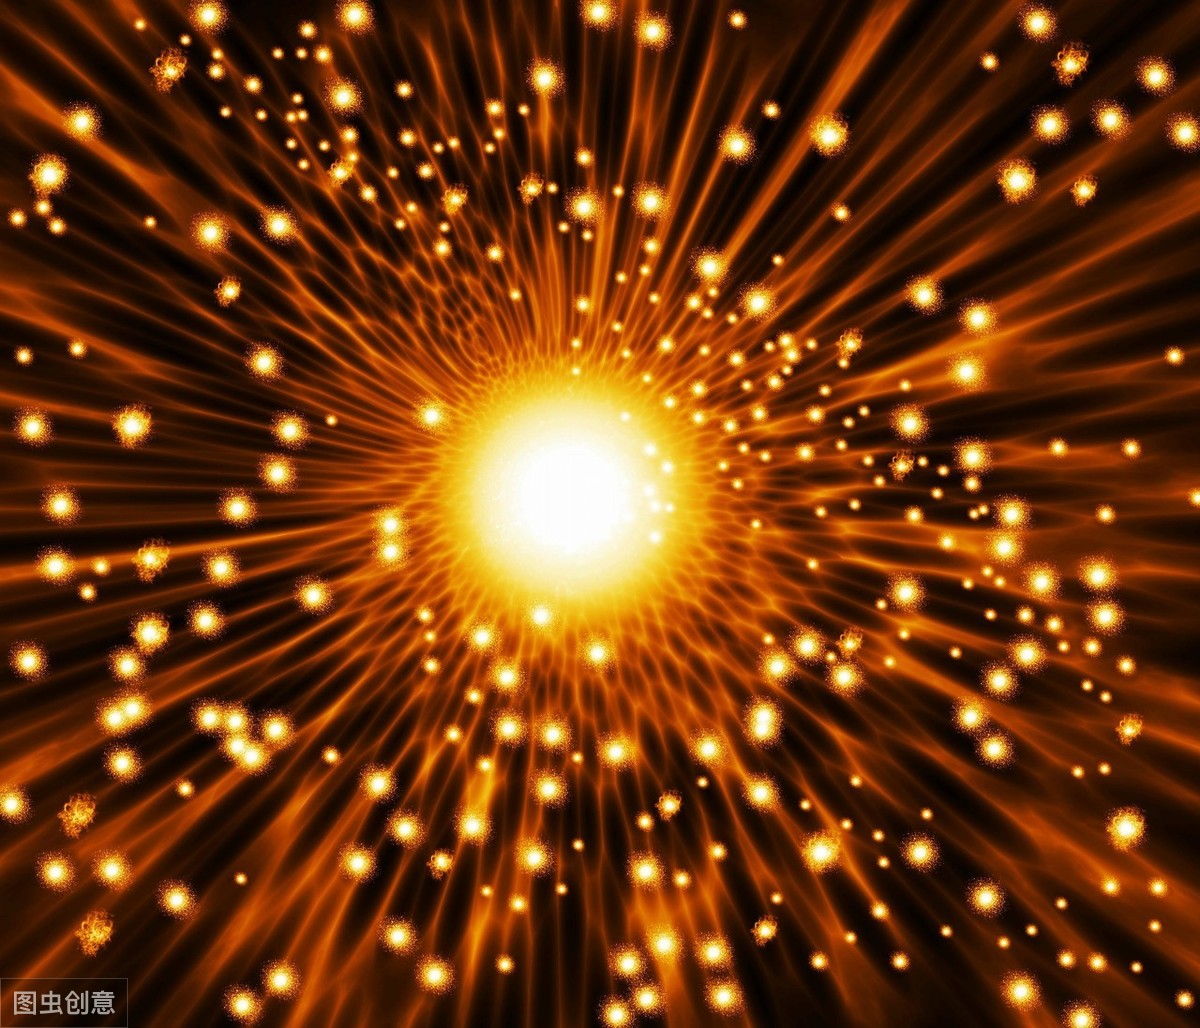 宇宙中第一缕光从哪里来？光的工作原理是什么？